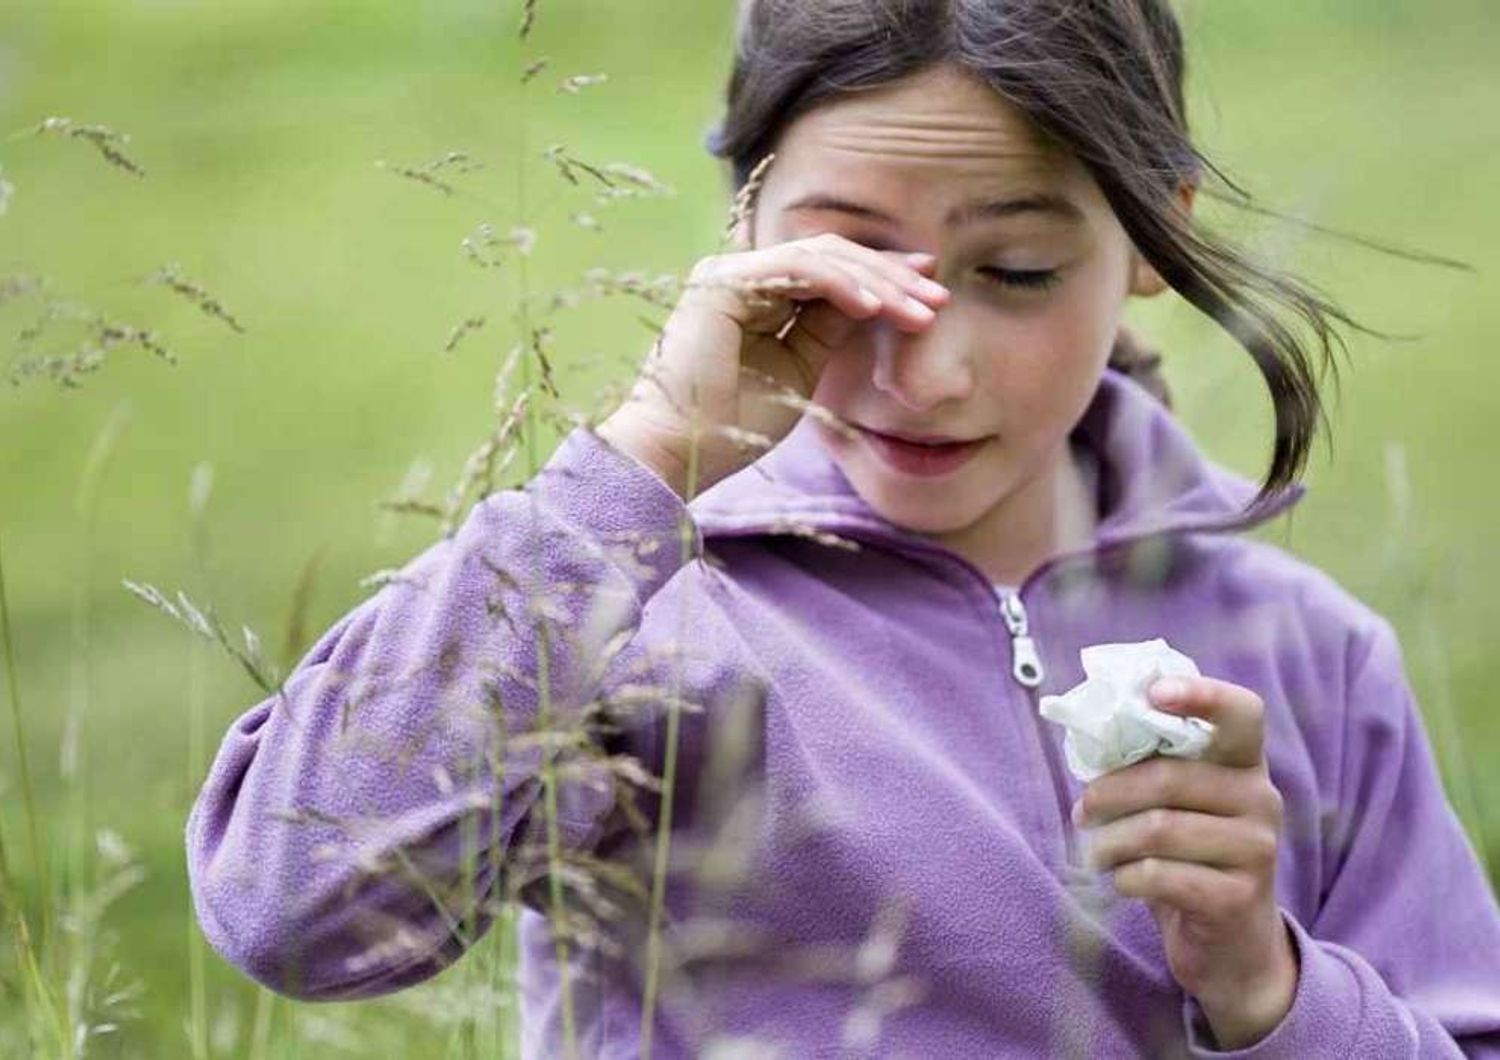 Fastidi di primavera: oltre 1 milione di bambini soffre di allergie ai pollini